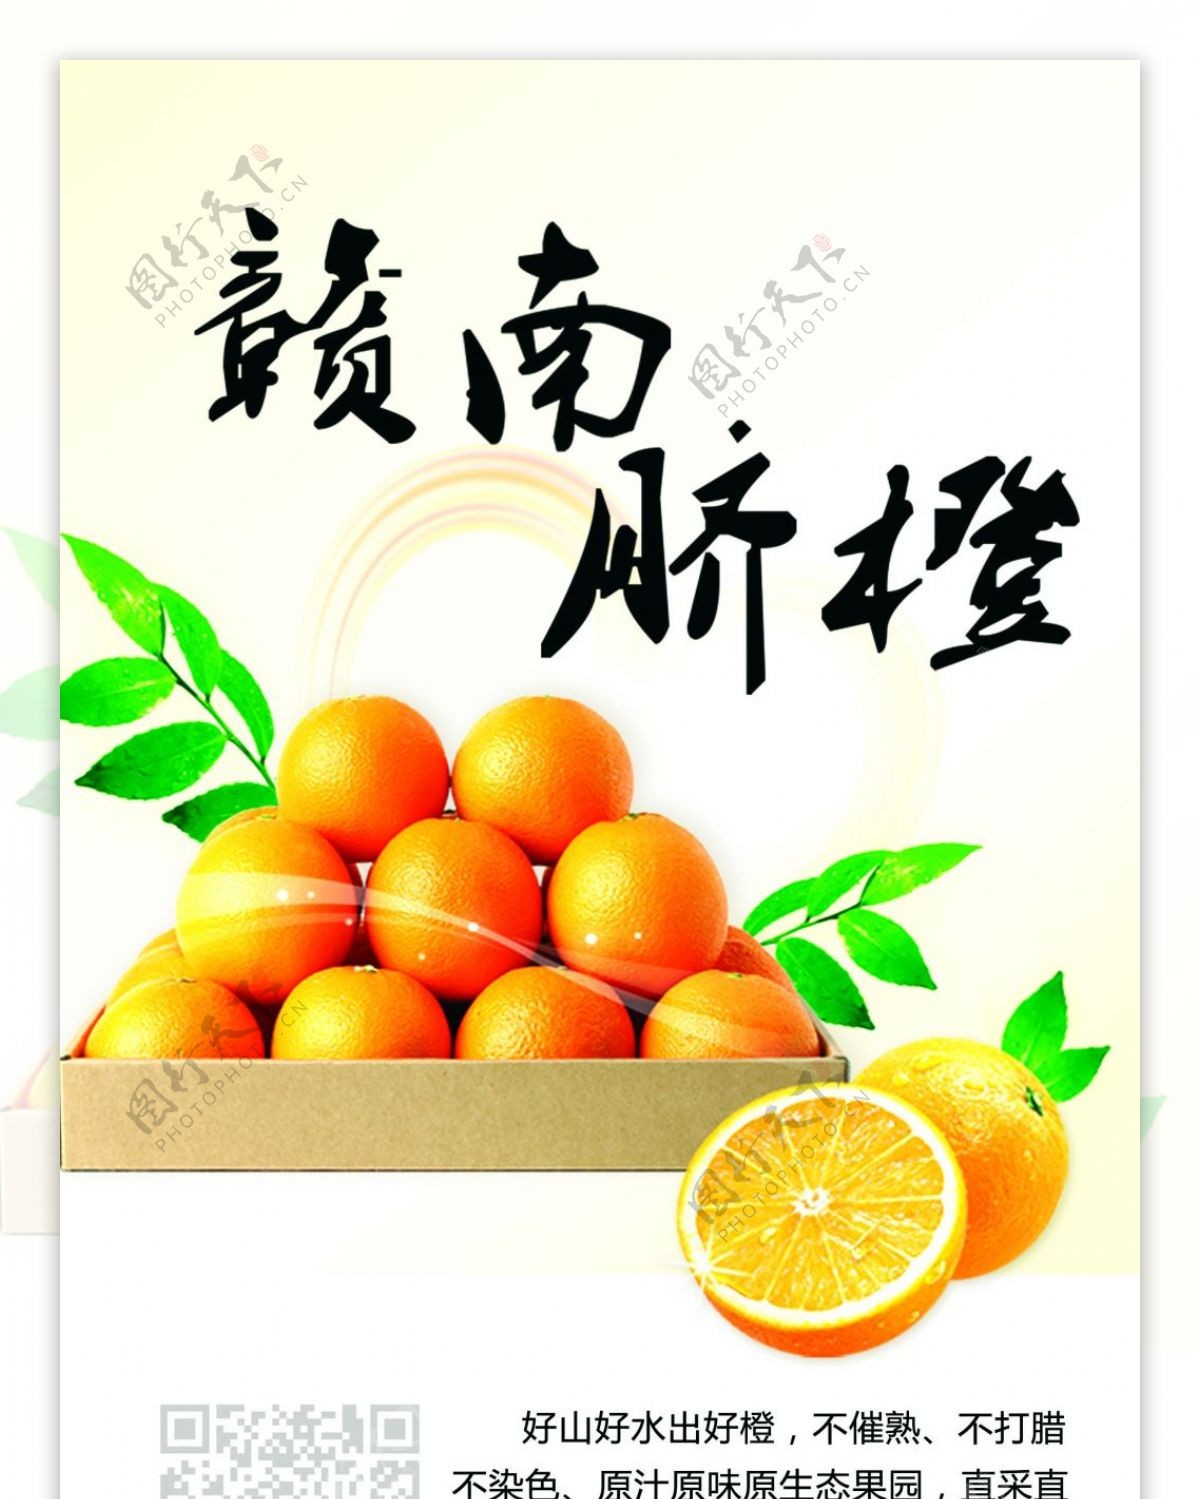 赣南脐橙x展板易拉宝广告水果